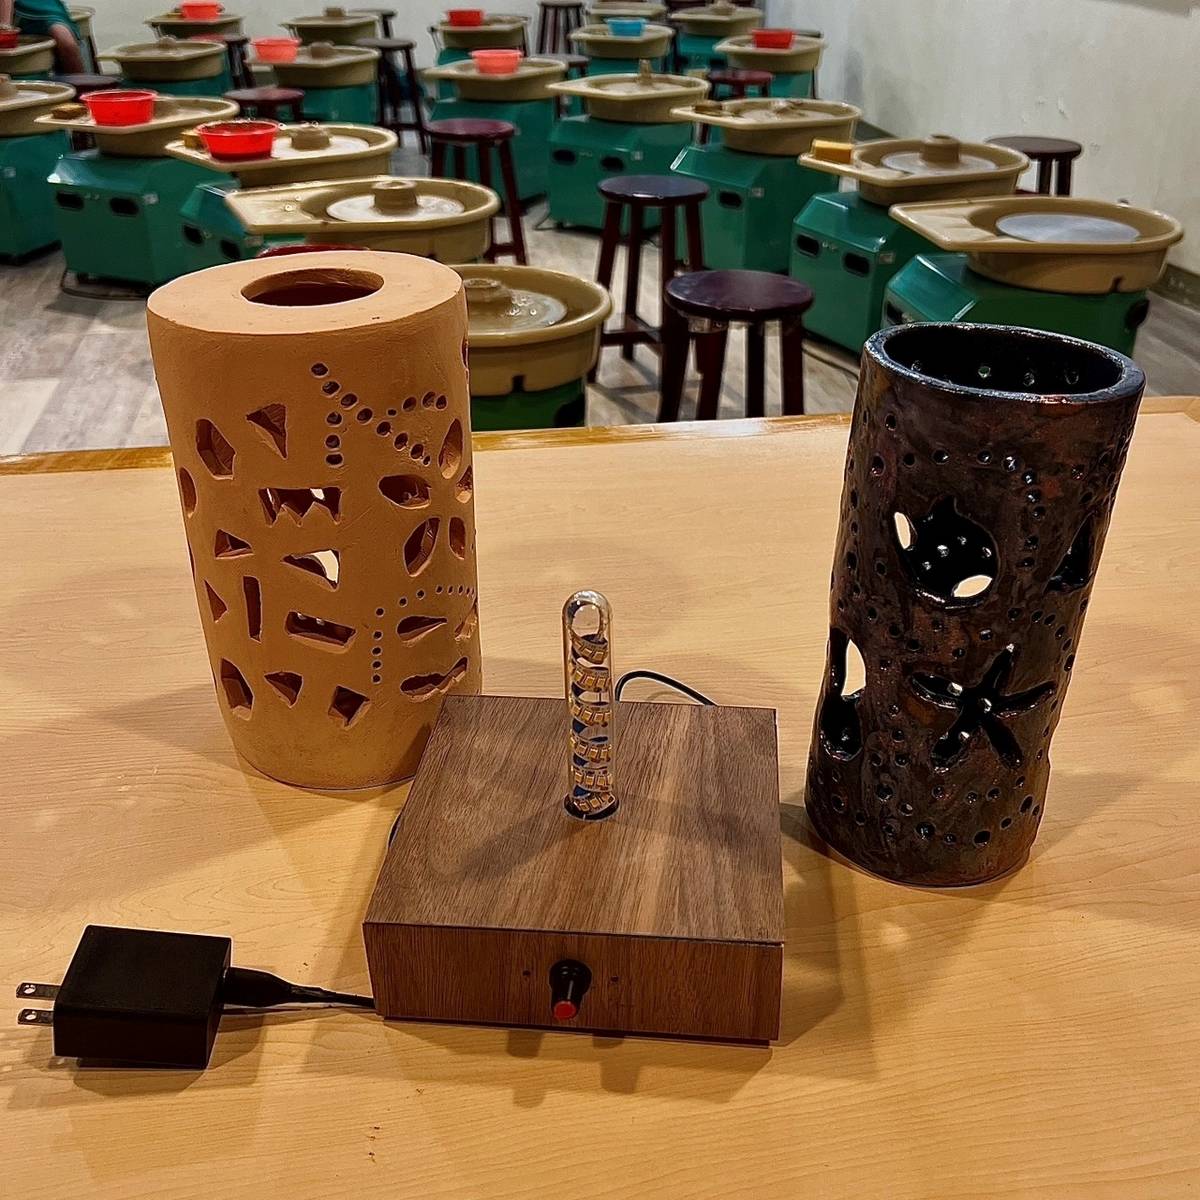 鶯歌科技中心結合鶯歌在地特色陶瓷與回收木的工藝作品